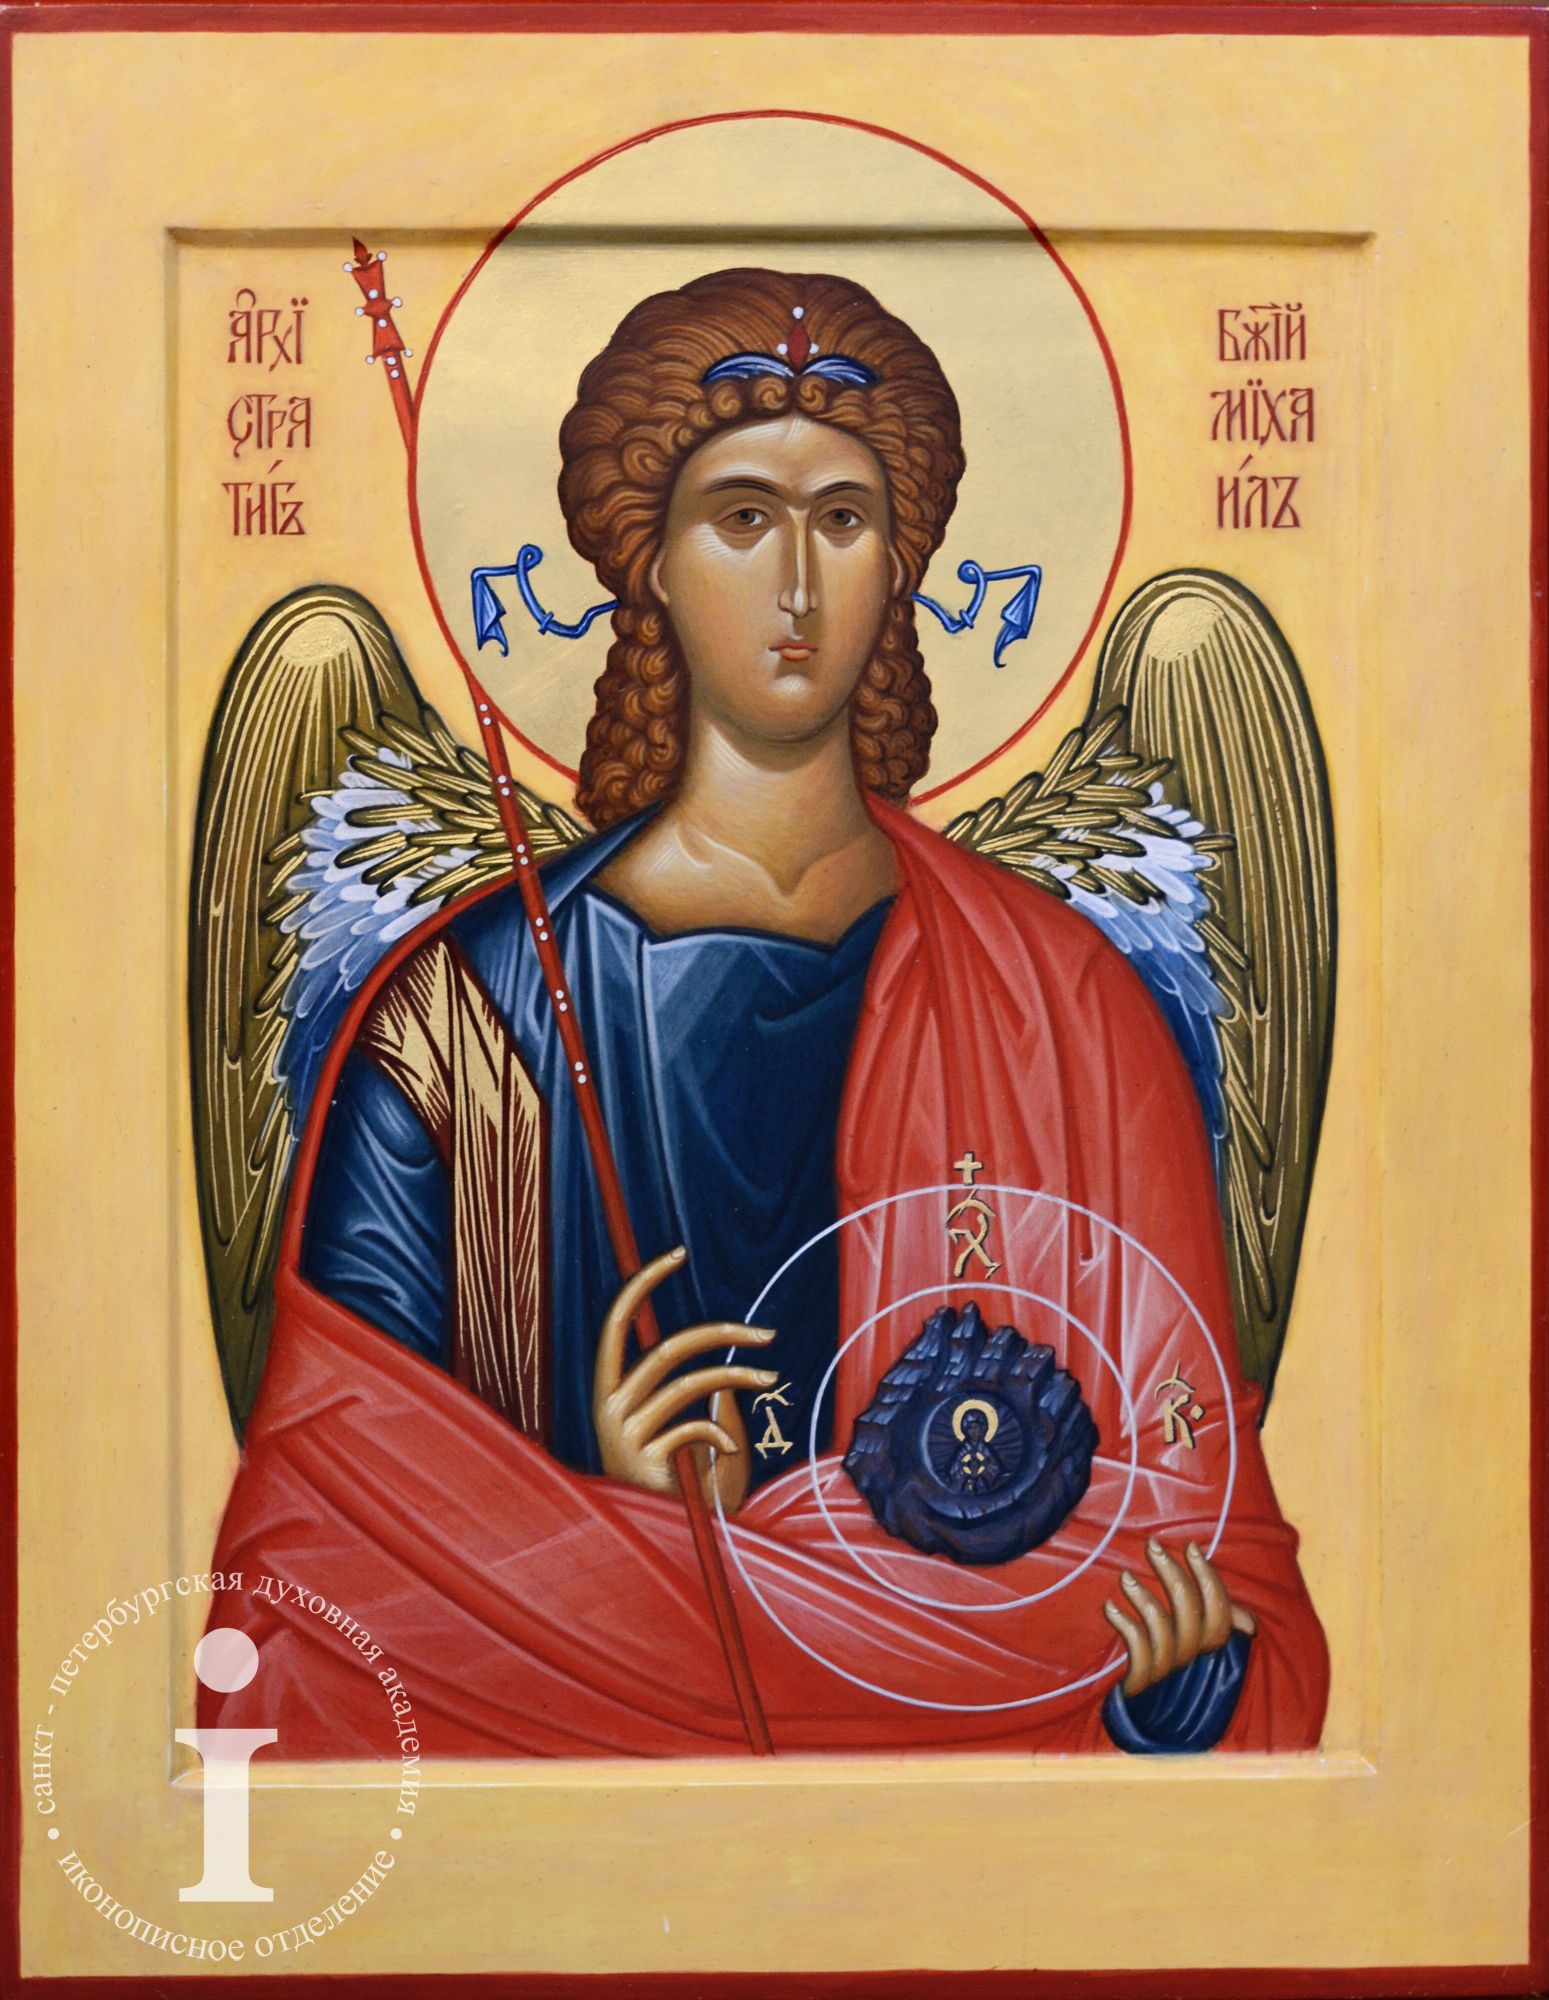 Образ св. Образ Святого. Икона образ Святого на м. Образ Святого Астерия.